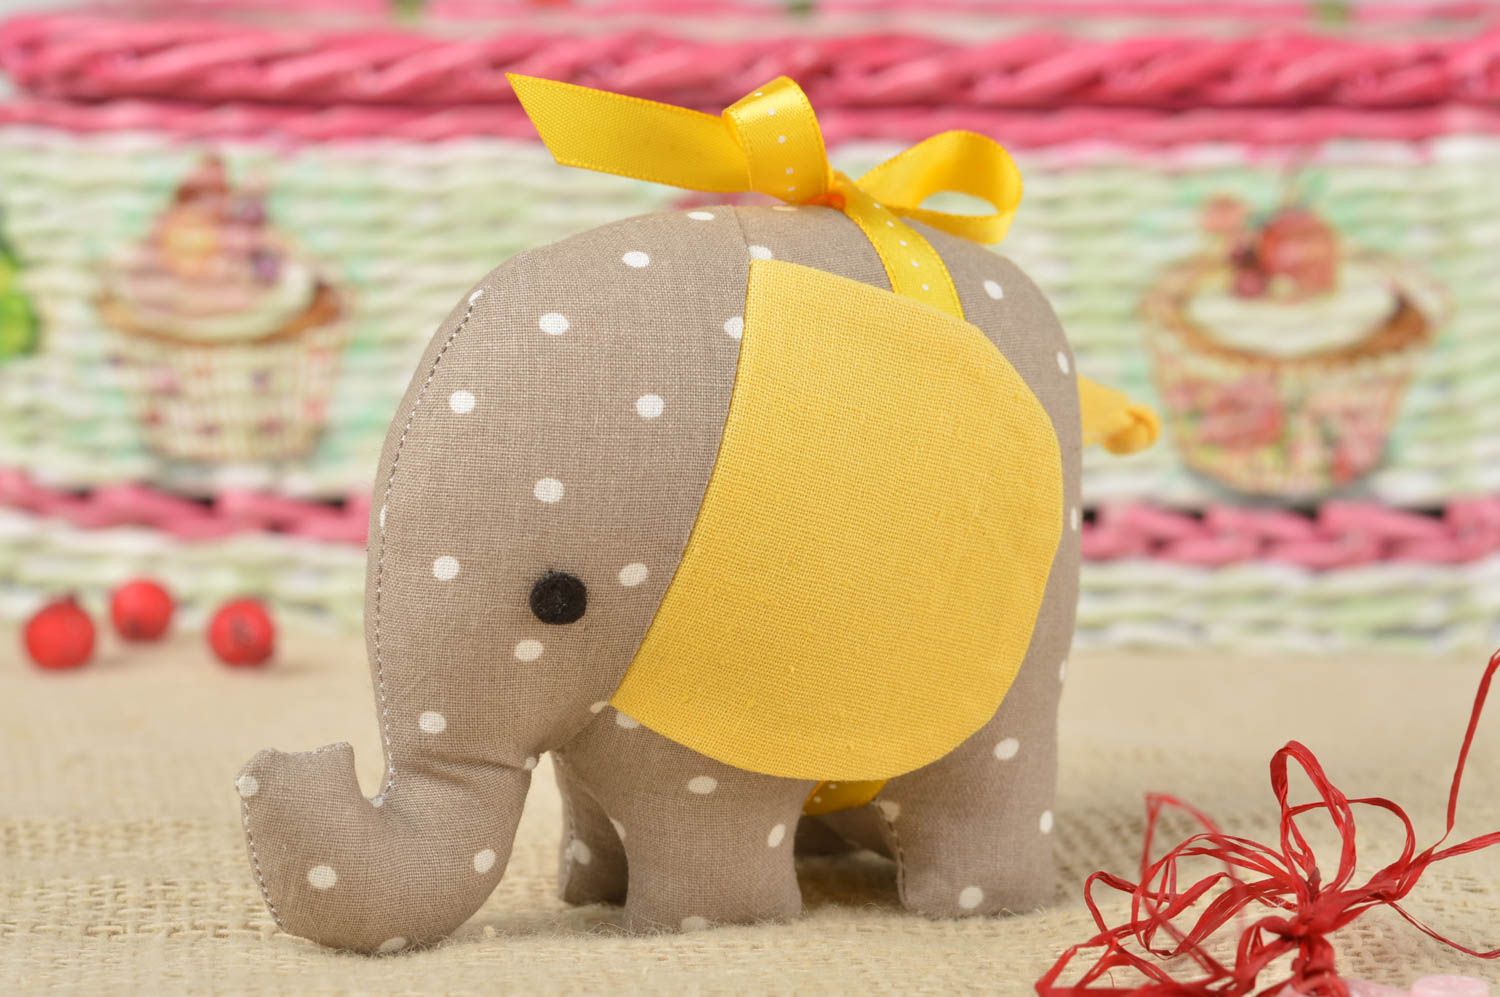 Handmade designer toy stylish decorative elephant unusual grey textile toy photo 1